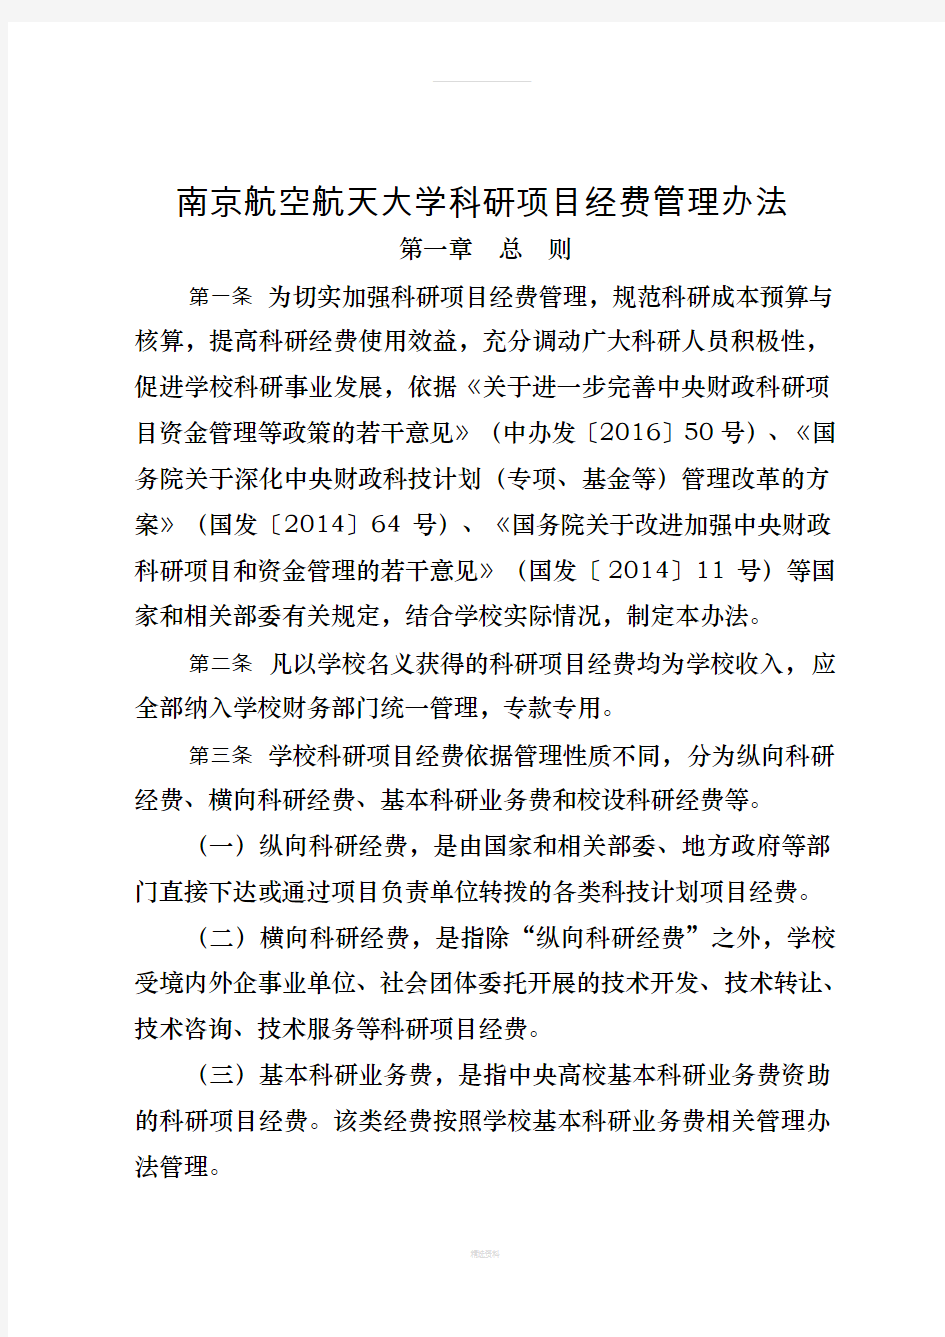 南京航空航天大学科研项目经费管理办法